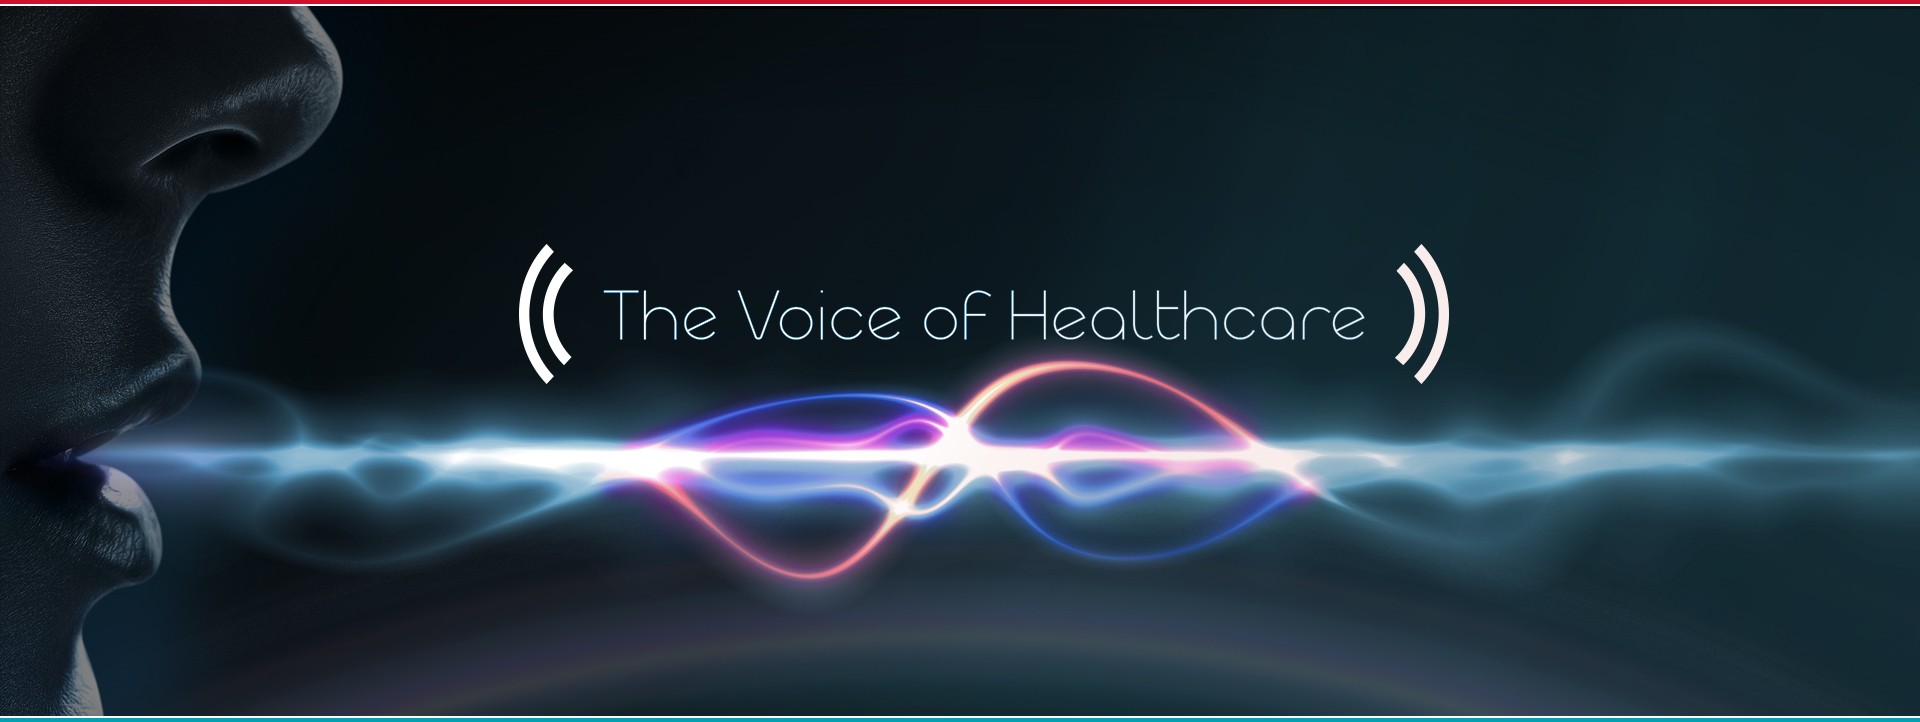 Aplicación Vocalis Health. (foto: Voicebot.ai)